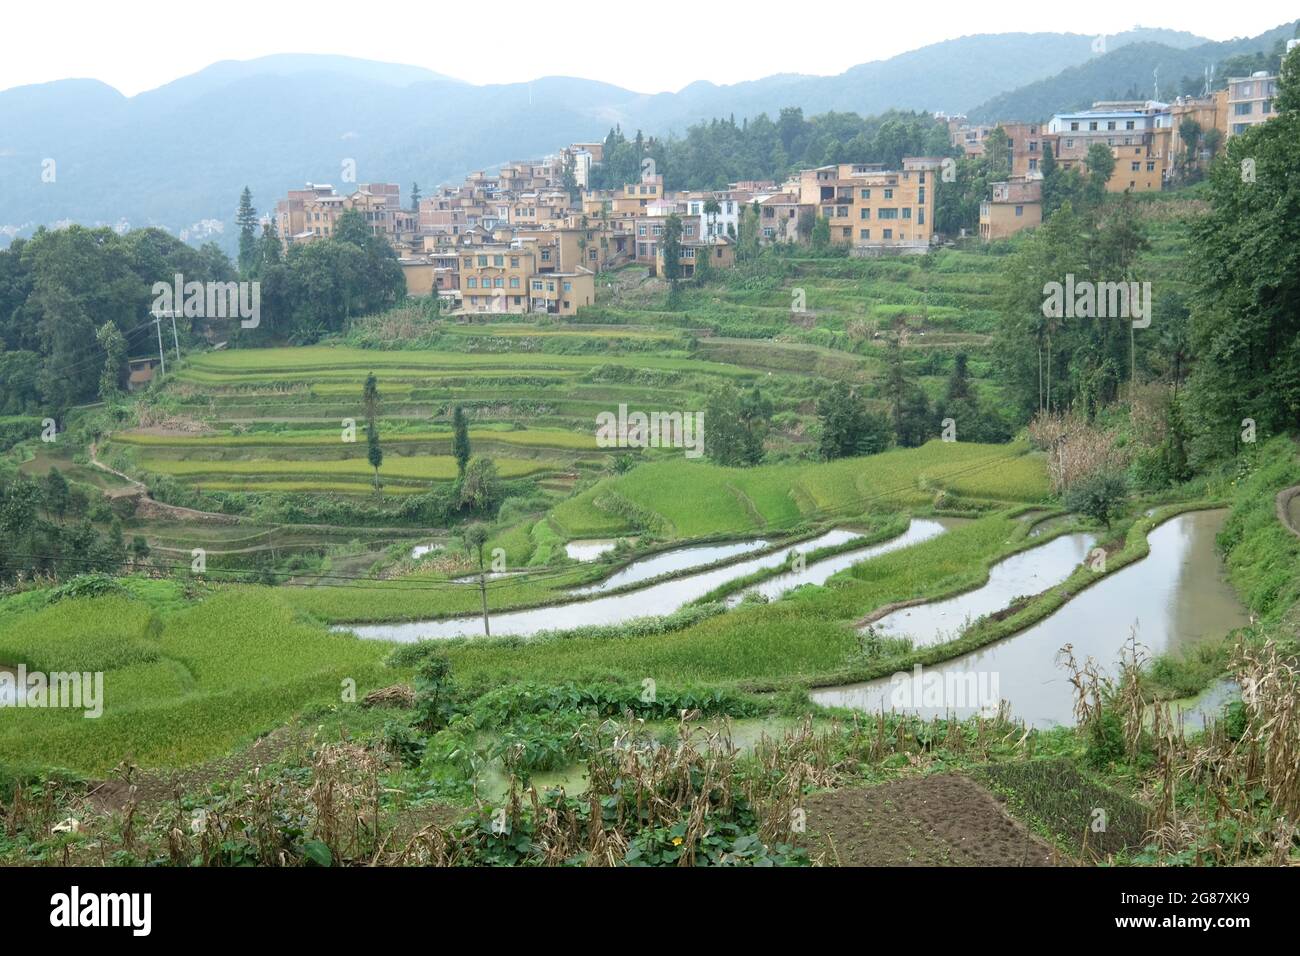 Fantastici campi di riso uno stile di agricoltura nella provincia di Yunnan Cina meridionale Foto Stock